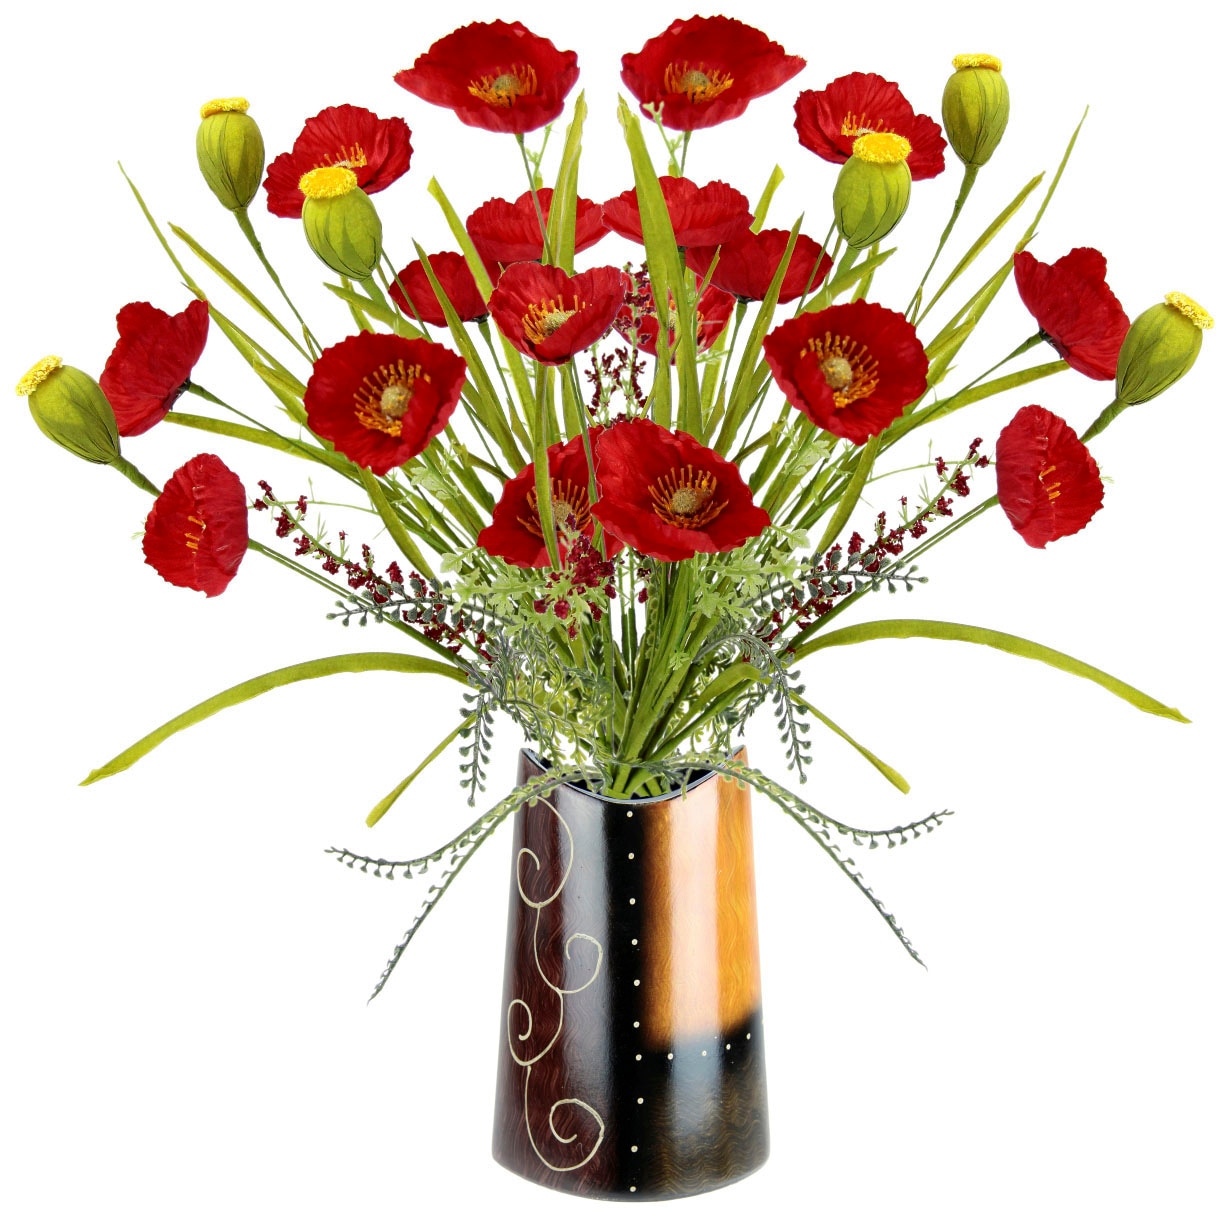 I.GE.A. Kunstblume Vase Strauß auf Mohnbusch Keramik«, »Mohnblumenbusch Bouquet kaufen in Mohn Blumen Raten Seidenblumenstrauß aus Mohnblume